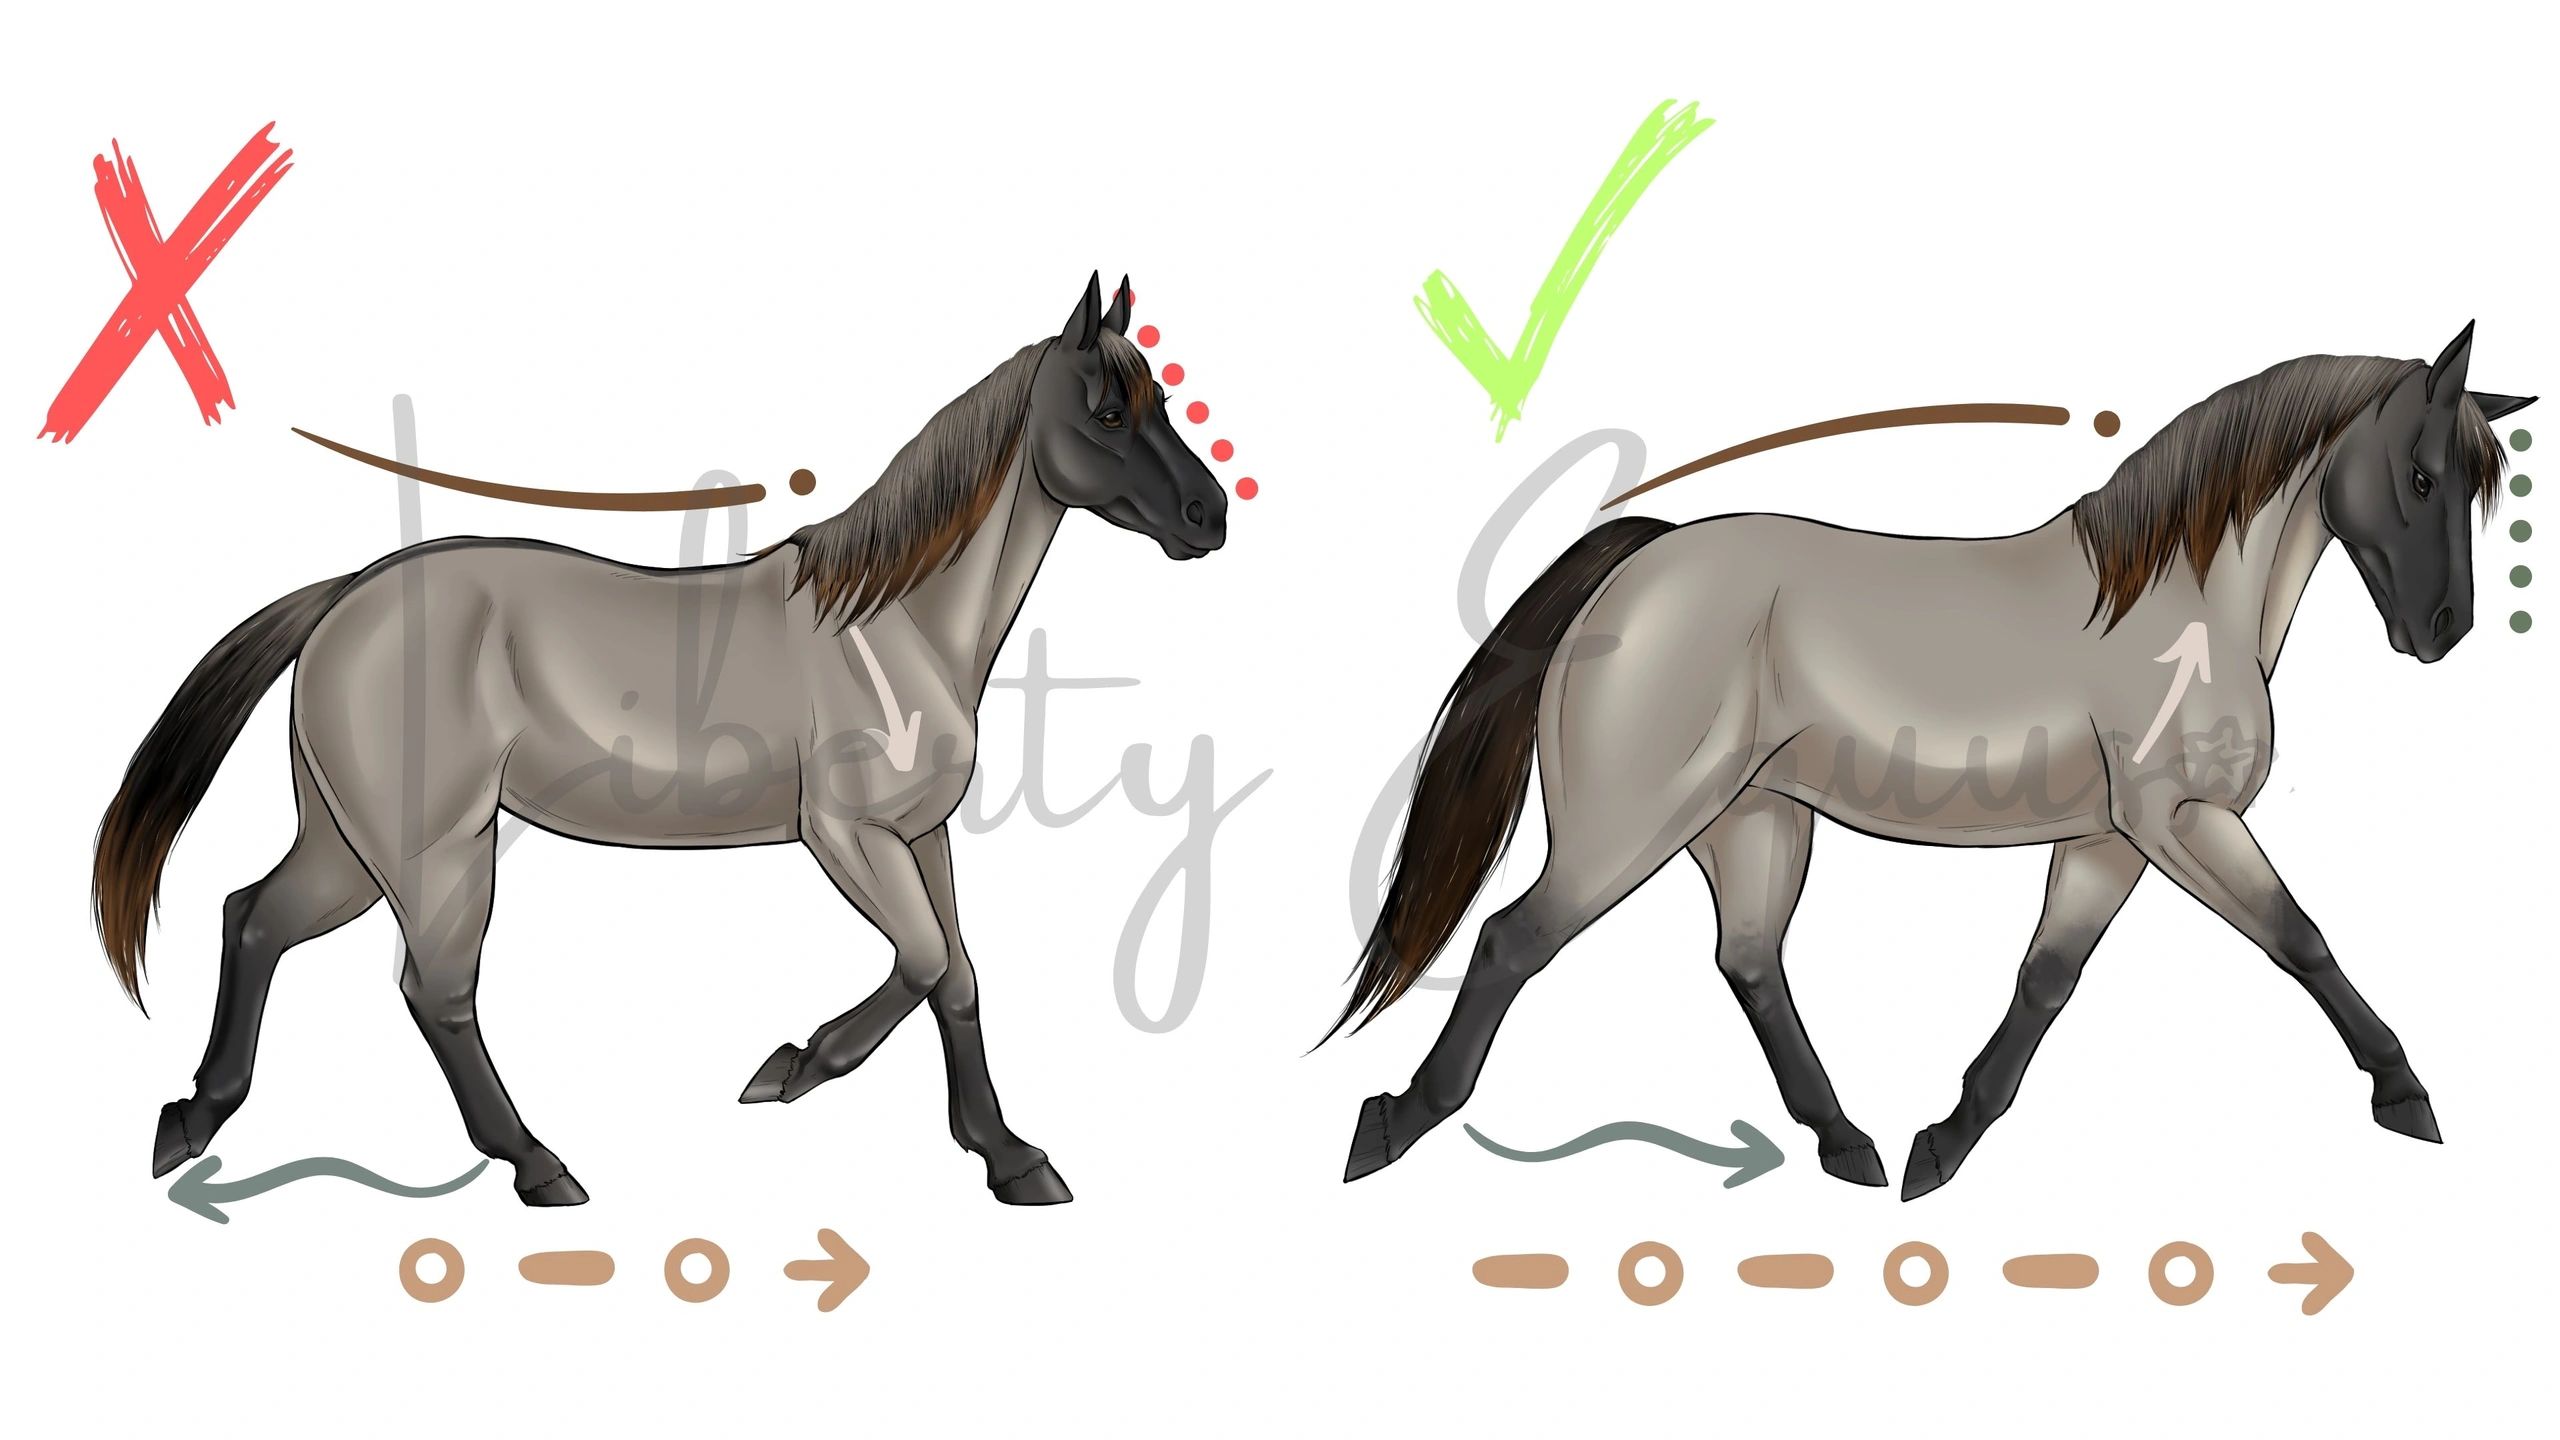 Montar Cavalos na Terceira Idade – Realidade ou Ficção? - Assessoria Animal